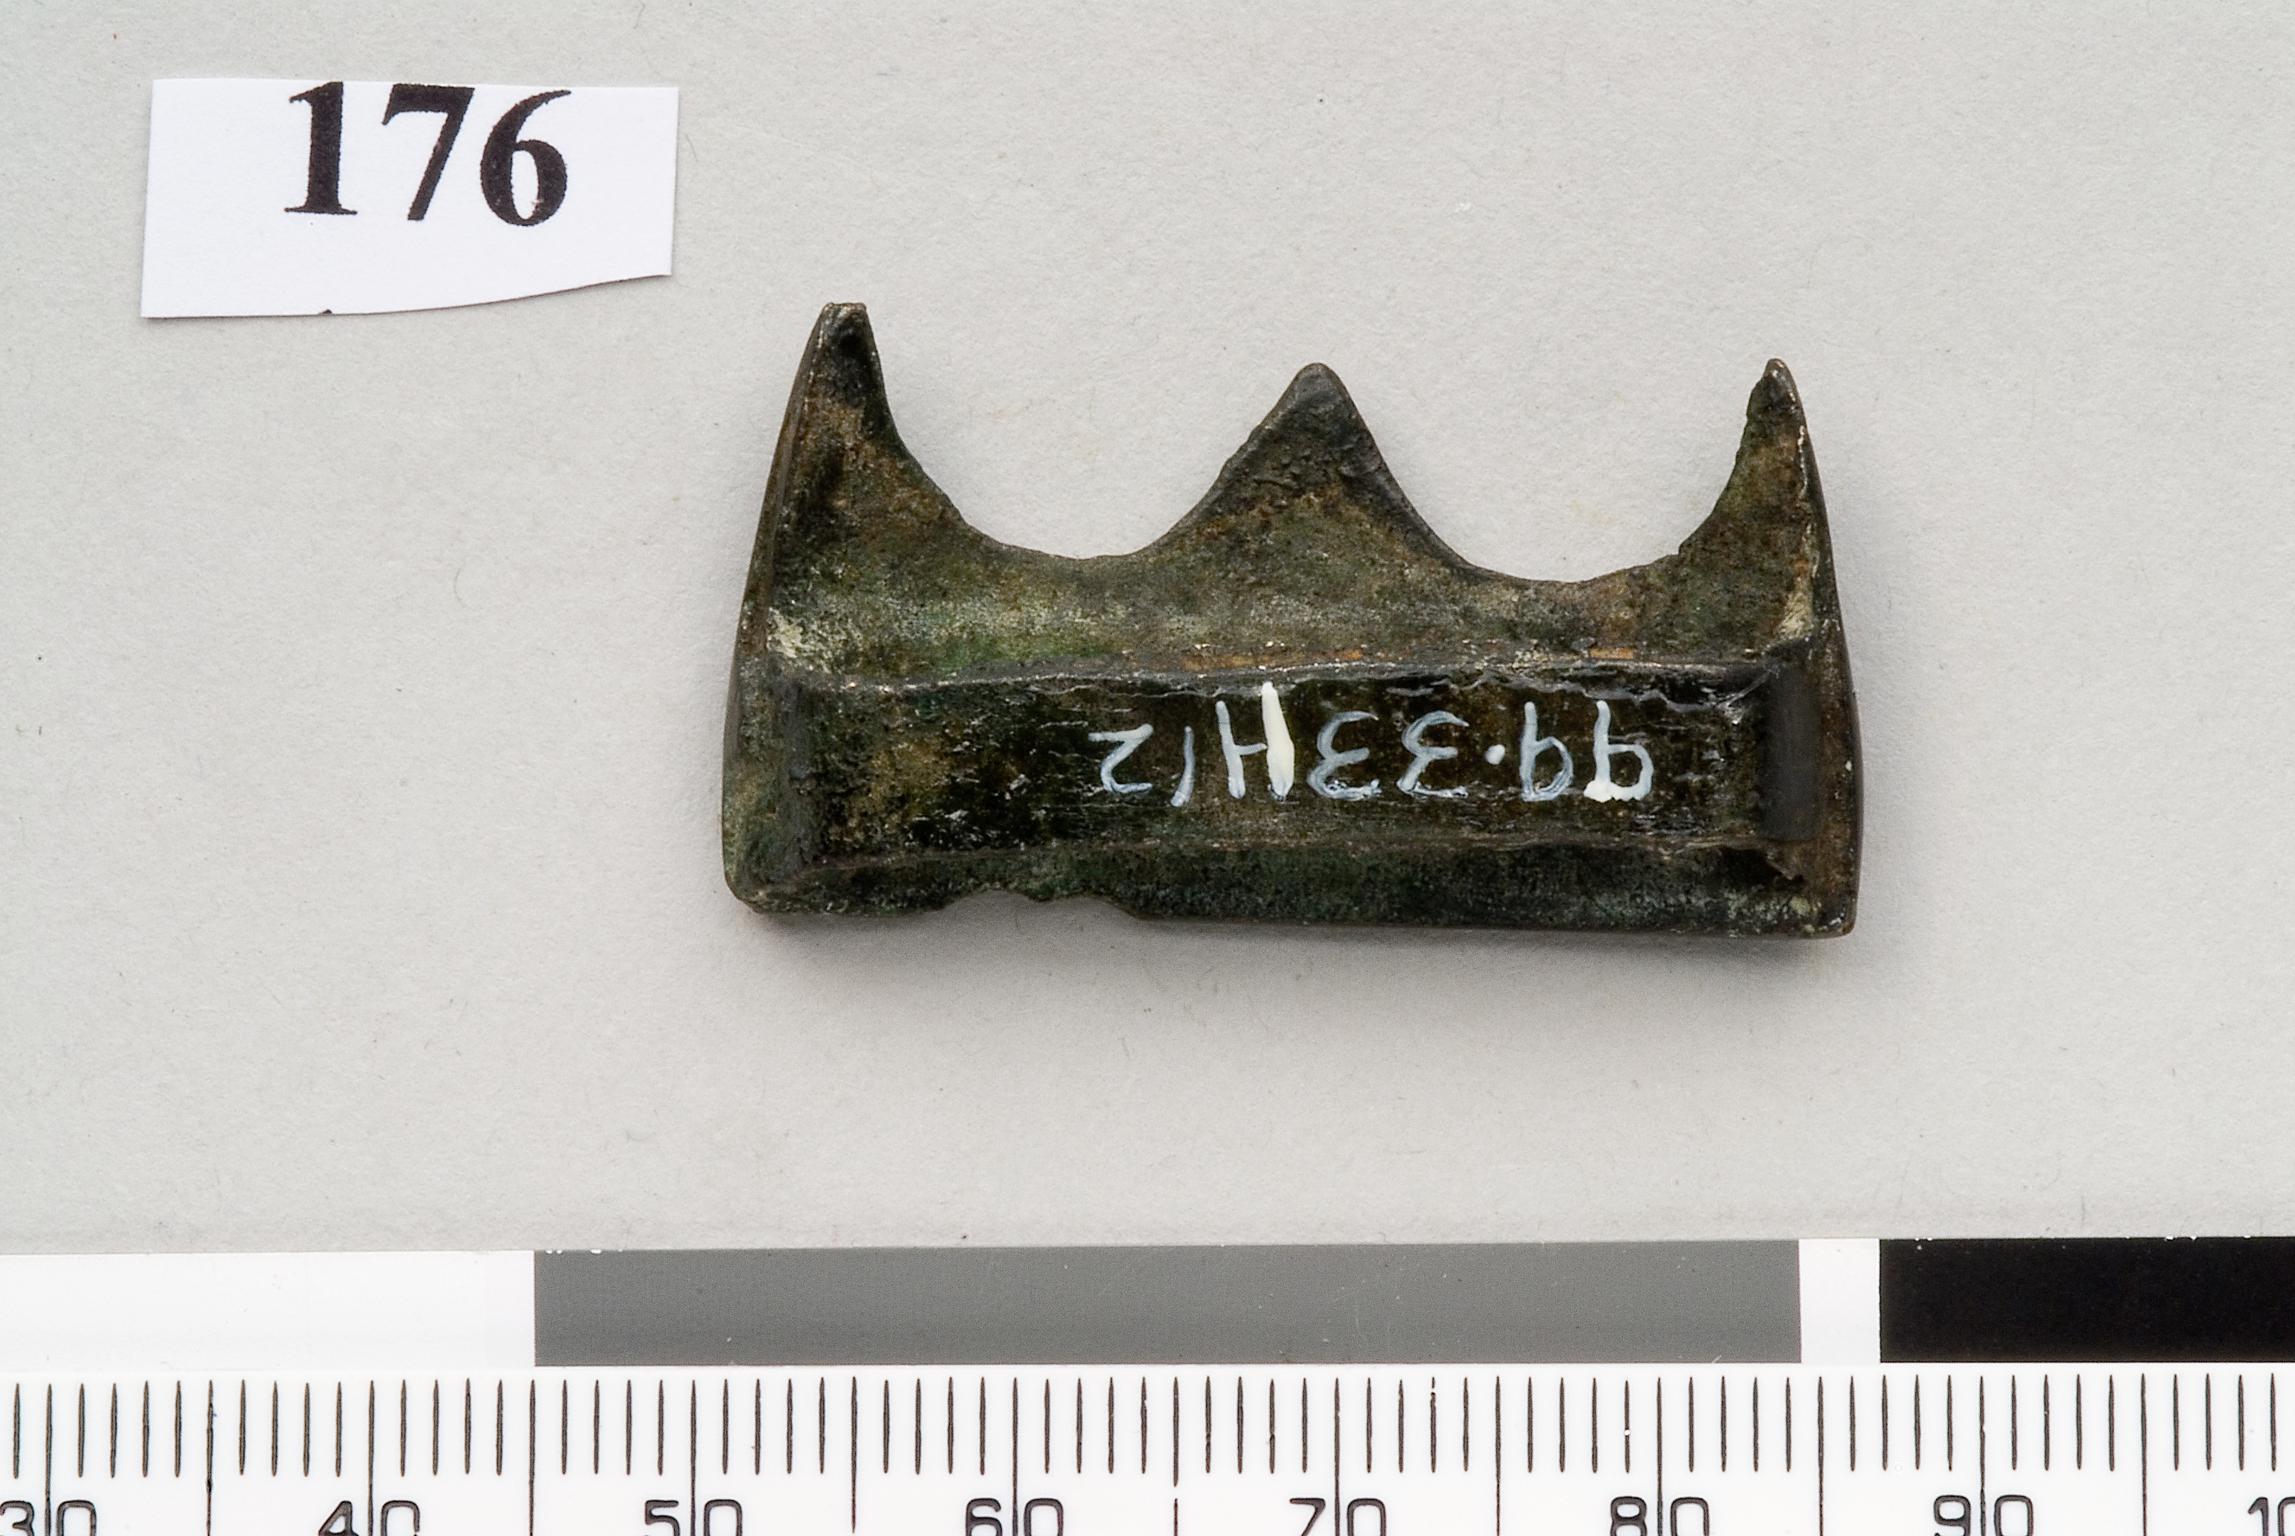 Late Bronze Age bronze strap slide